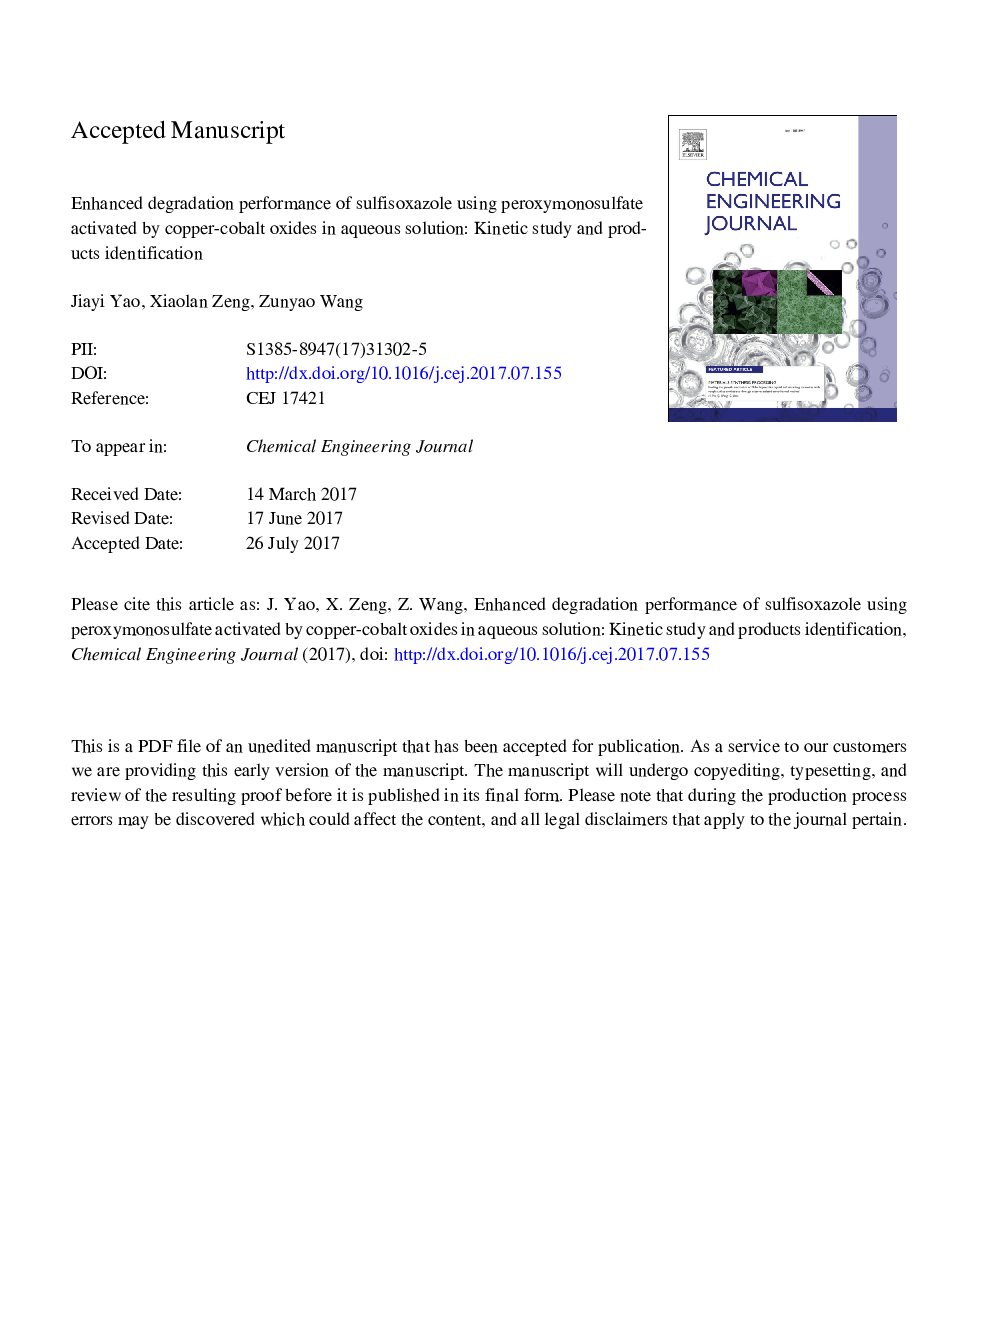 عملکرد تخریب پیشرفته سولفیسکسازول با استفاده از پراکسیمنسوفلافت فعال شده توسط اکسید مس-کبالت در محلول آبی: مطالعه جنبشی و شناسایی محصولات 